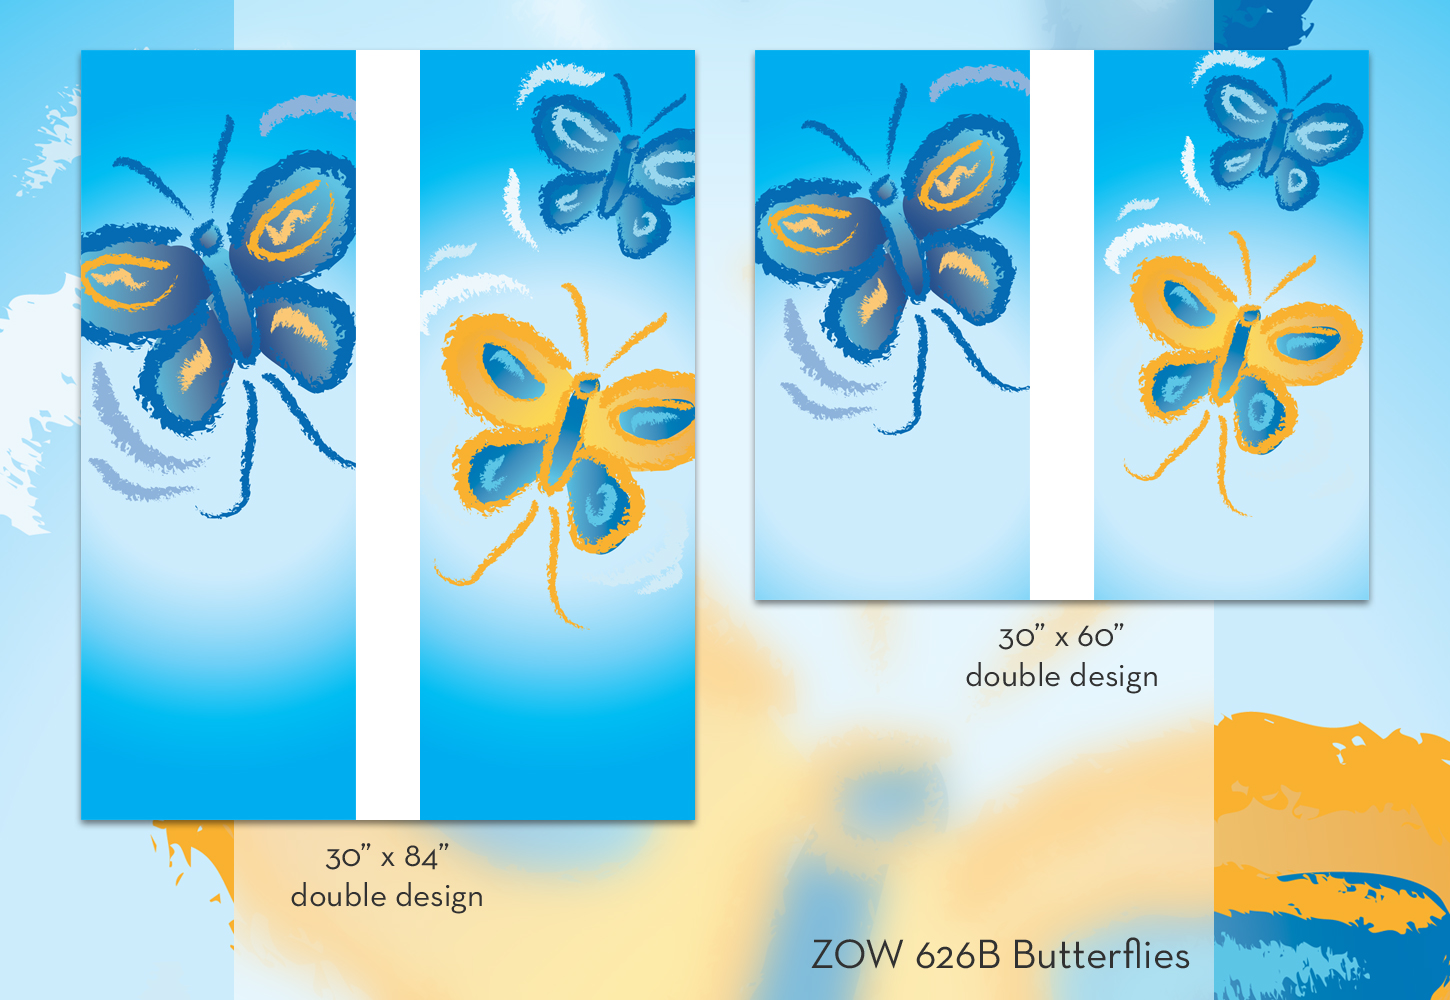 ZOW 626B Butterflies